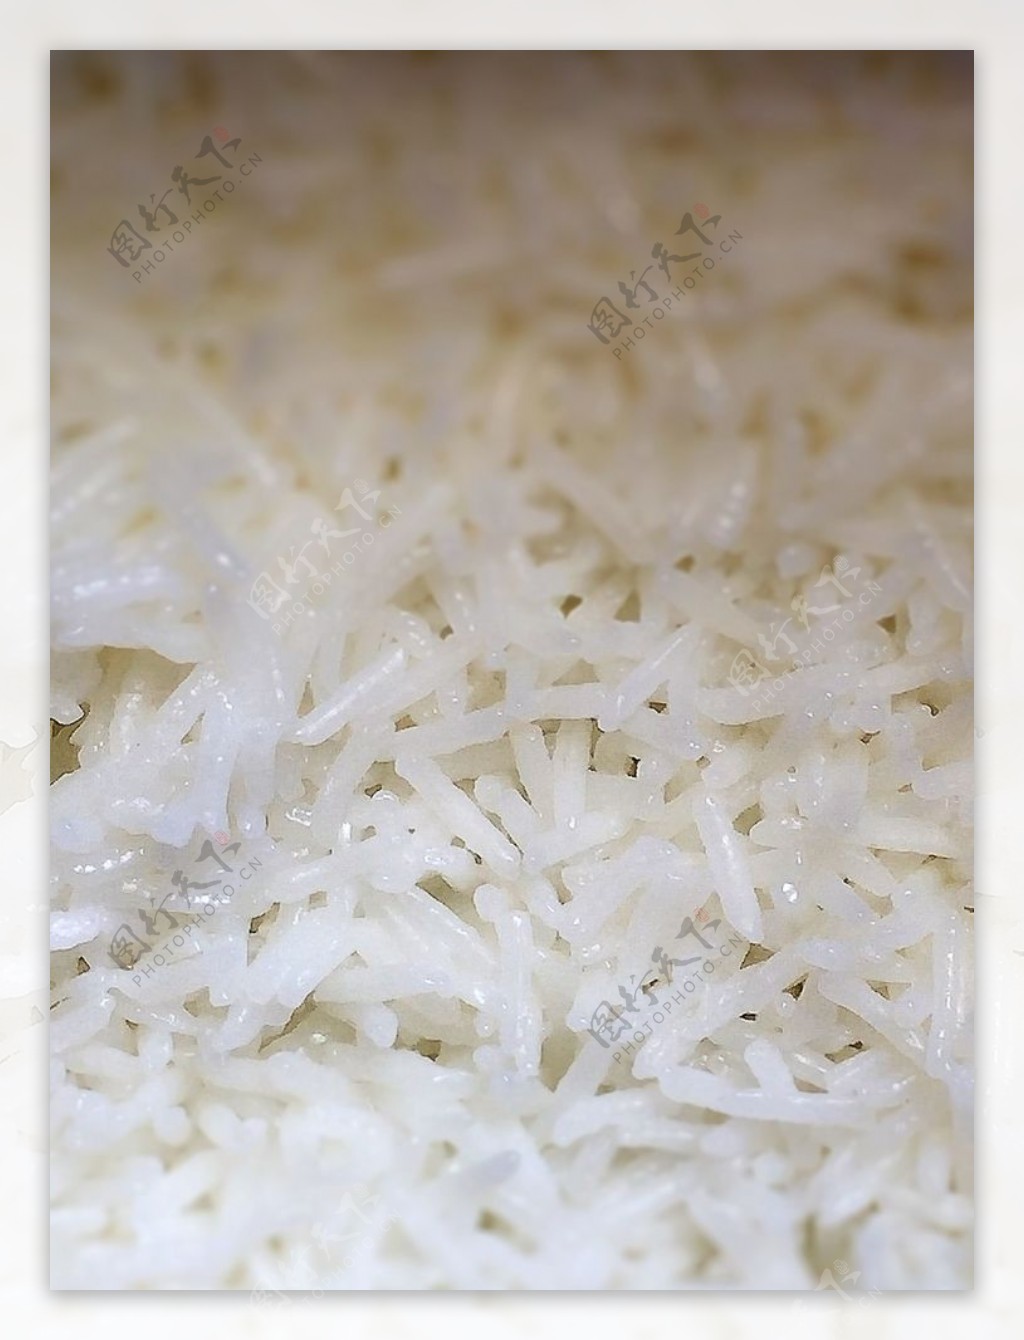 稻鳖米